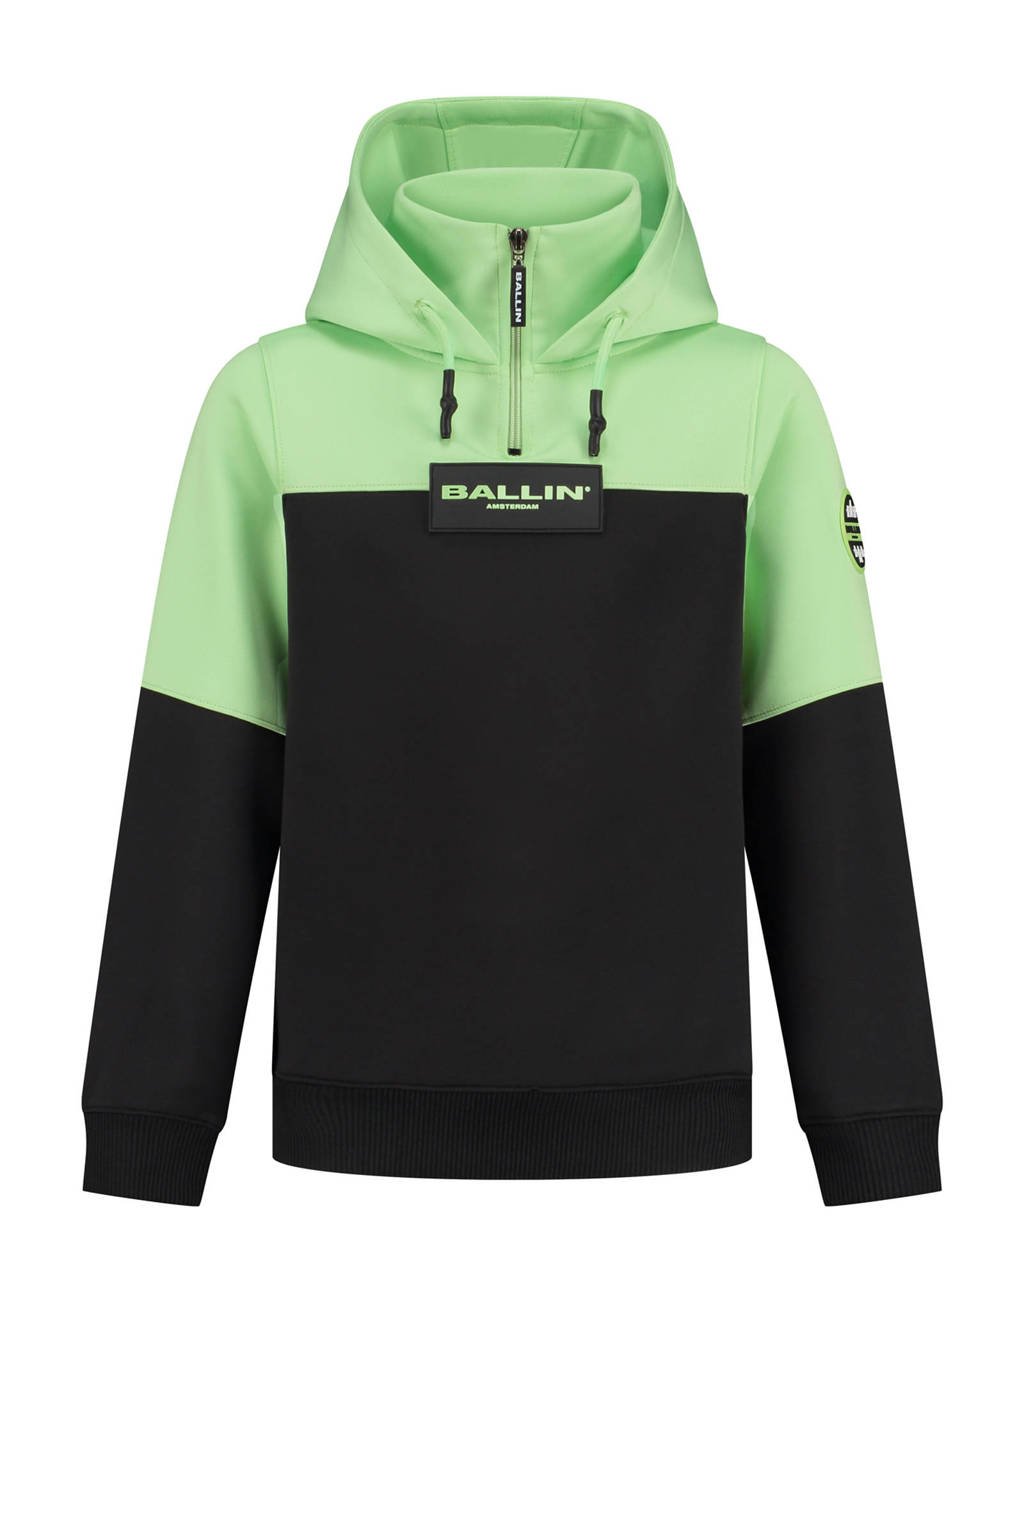 Ballin unisex hoodie limegroen/zwart